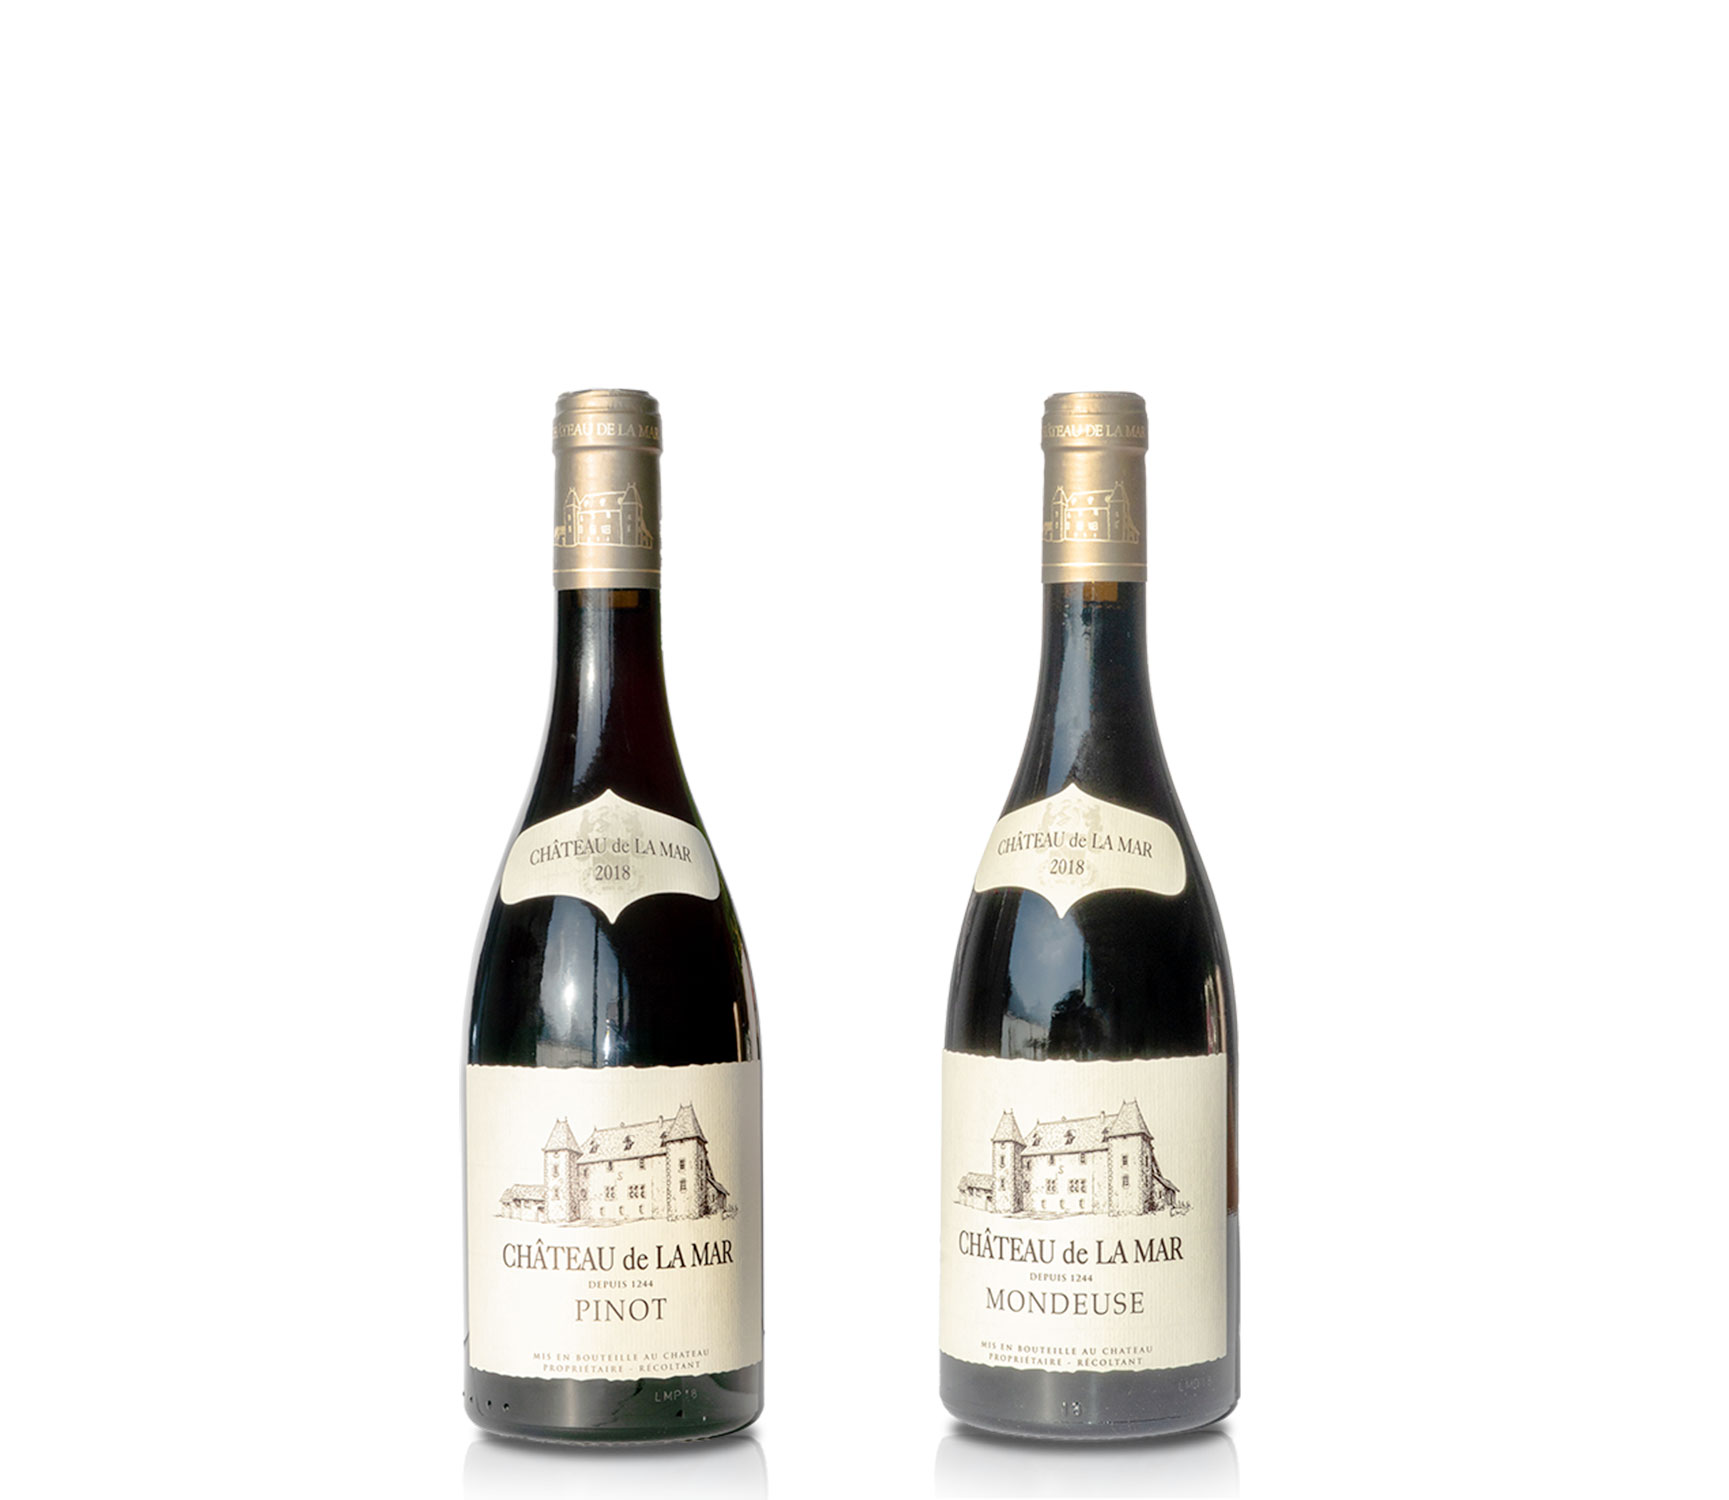 Vins rouge de Savoie - Mondeuse et Pinot Marestel